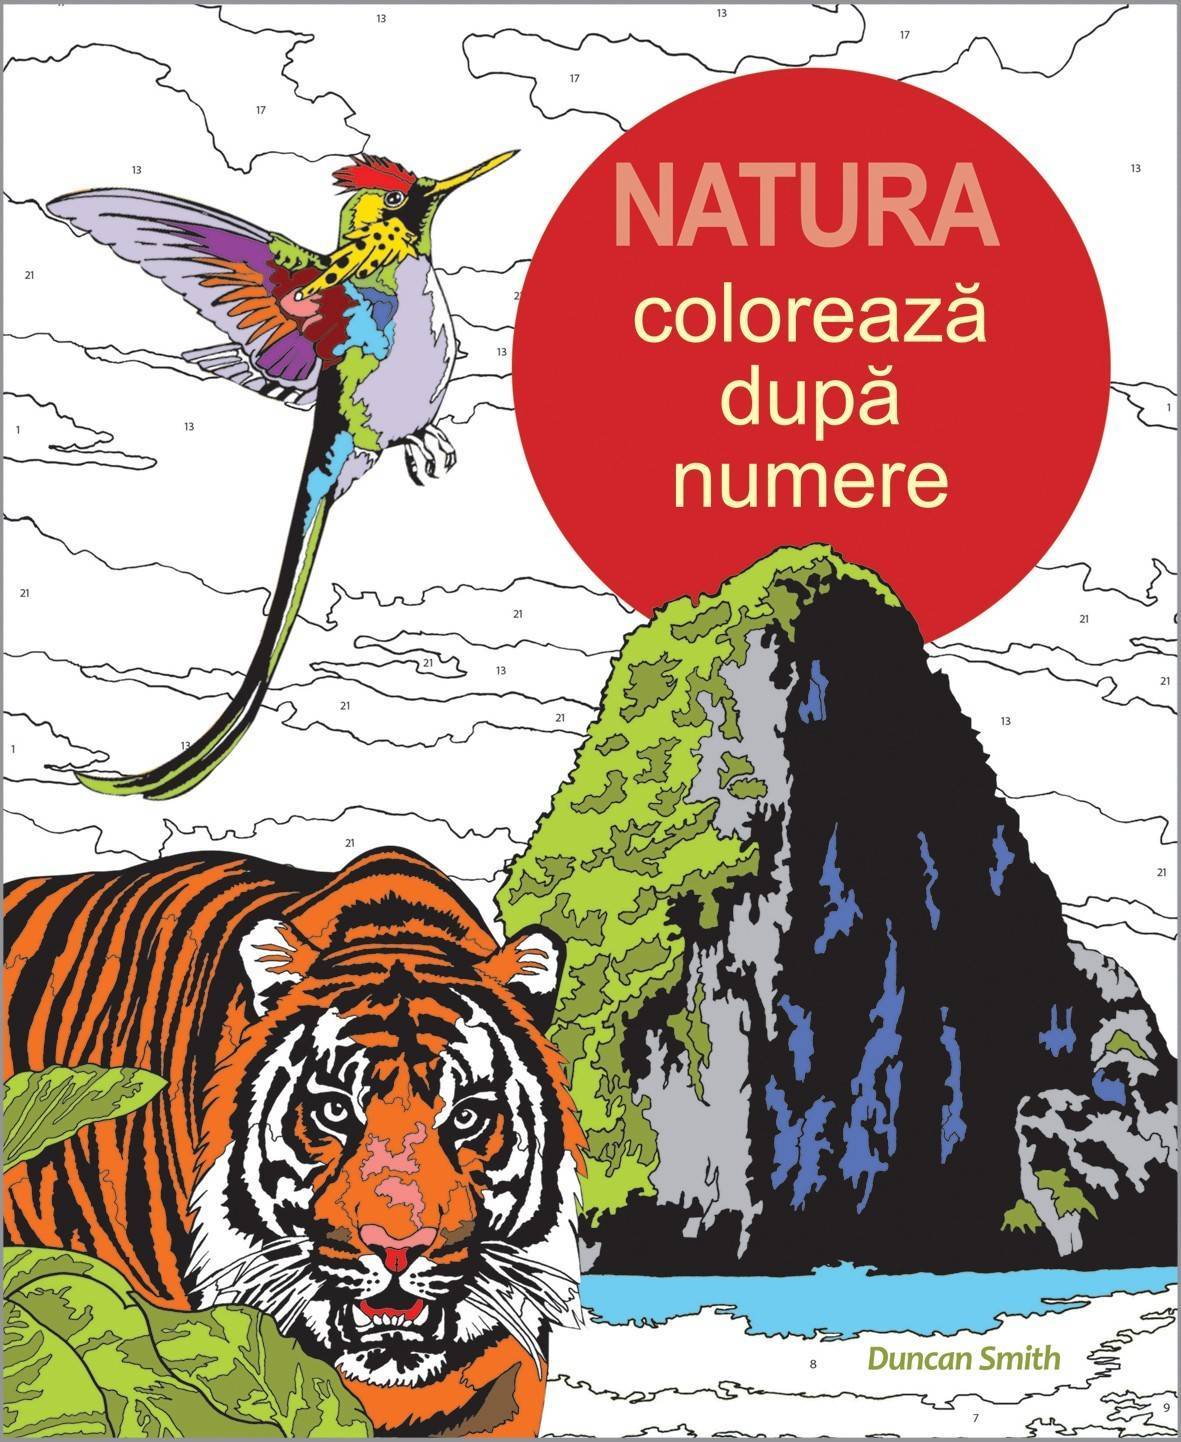 Coloreaza dupa numere - natura - duncan smith - carte - dph